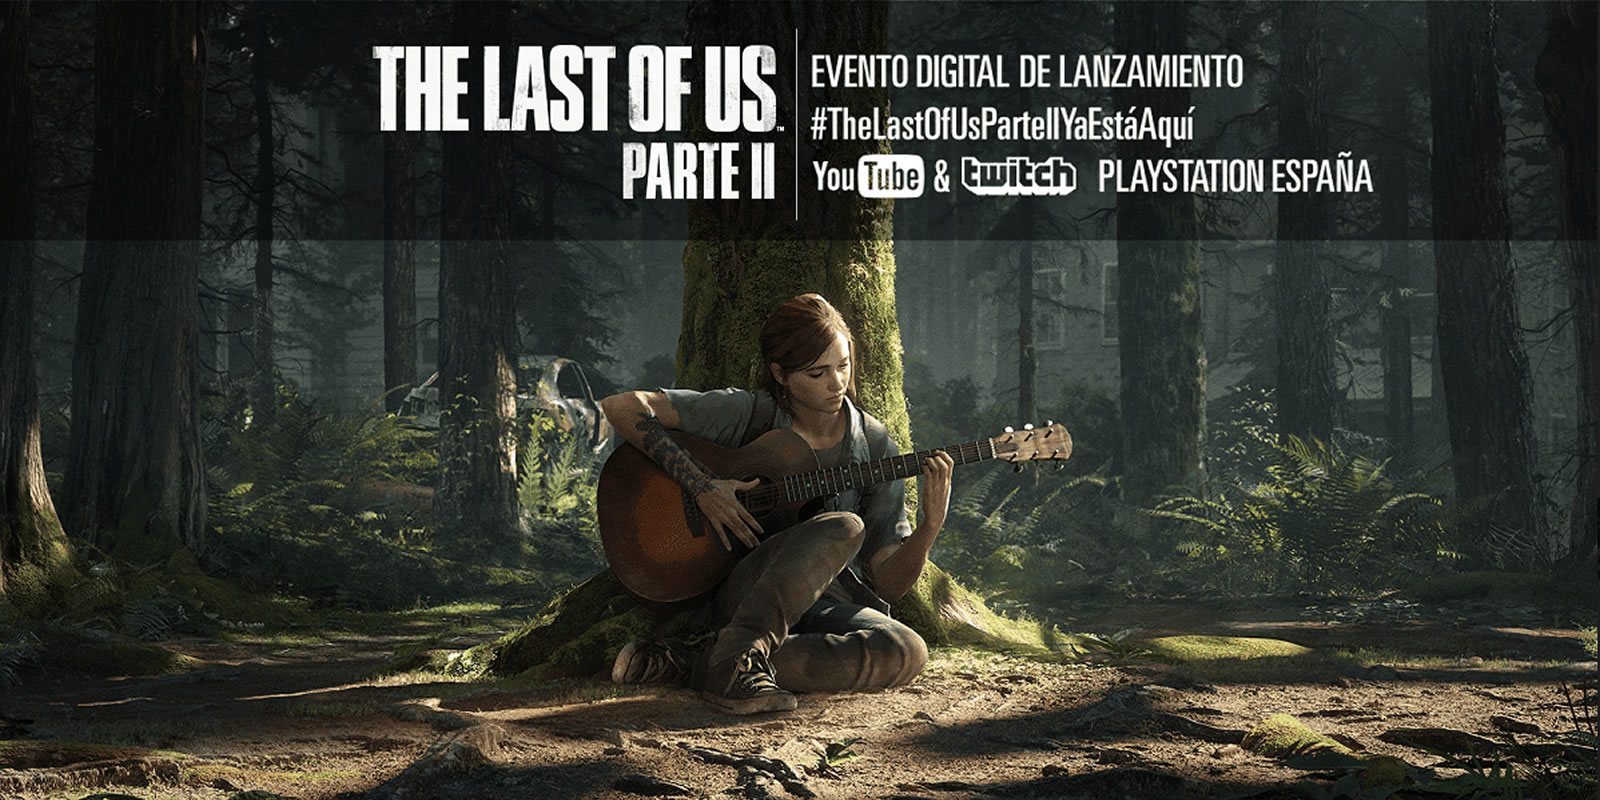 Sony anuncia un evento digital para celebrar el lanzamiento de 'The Last of Us: Parte II'